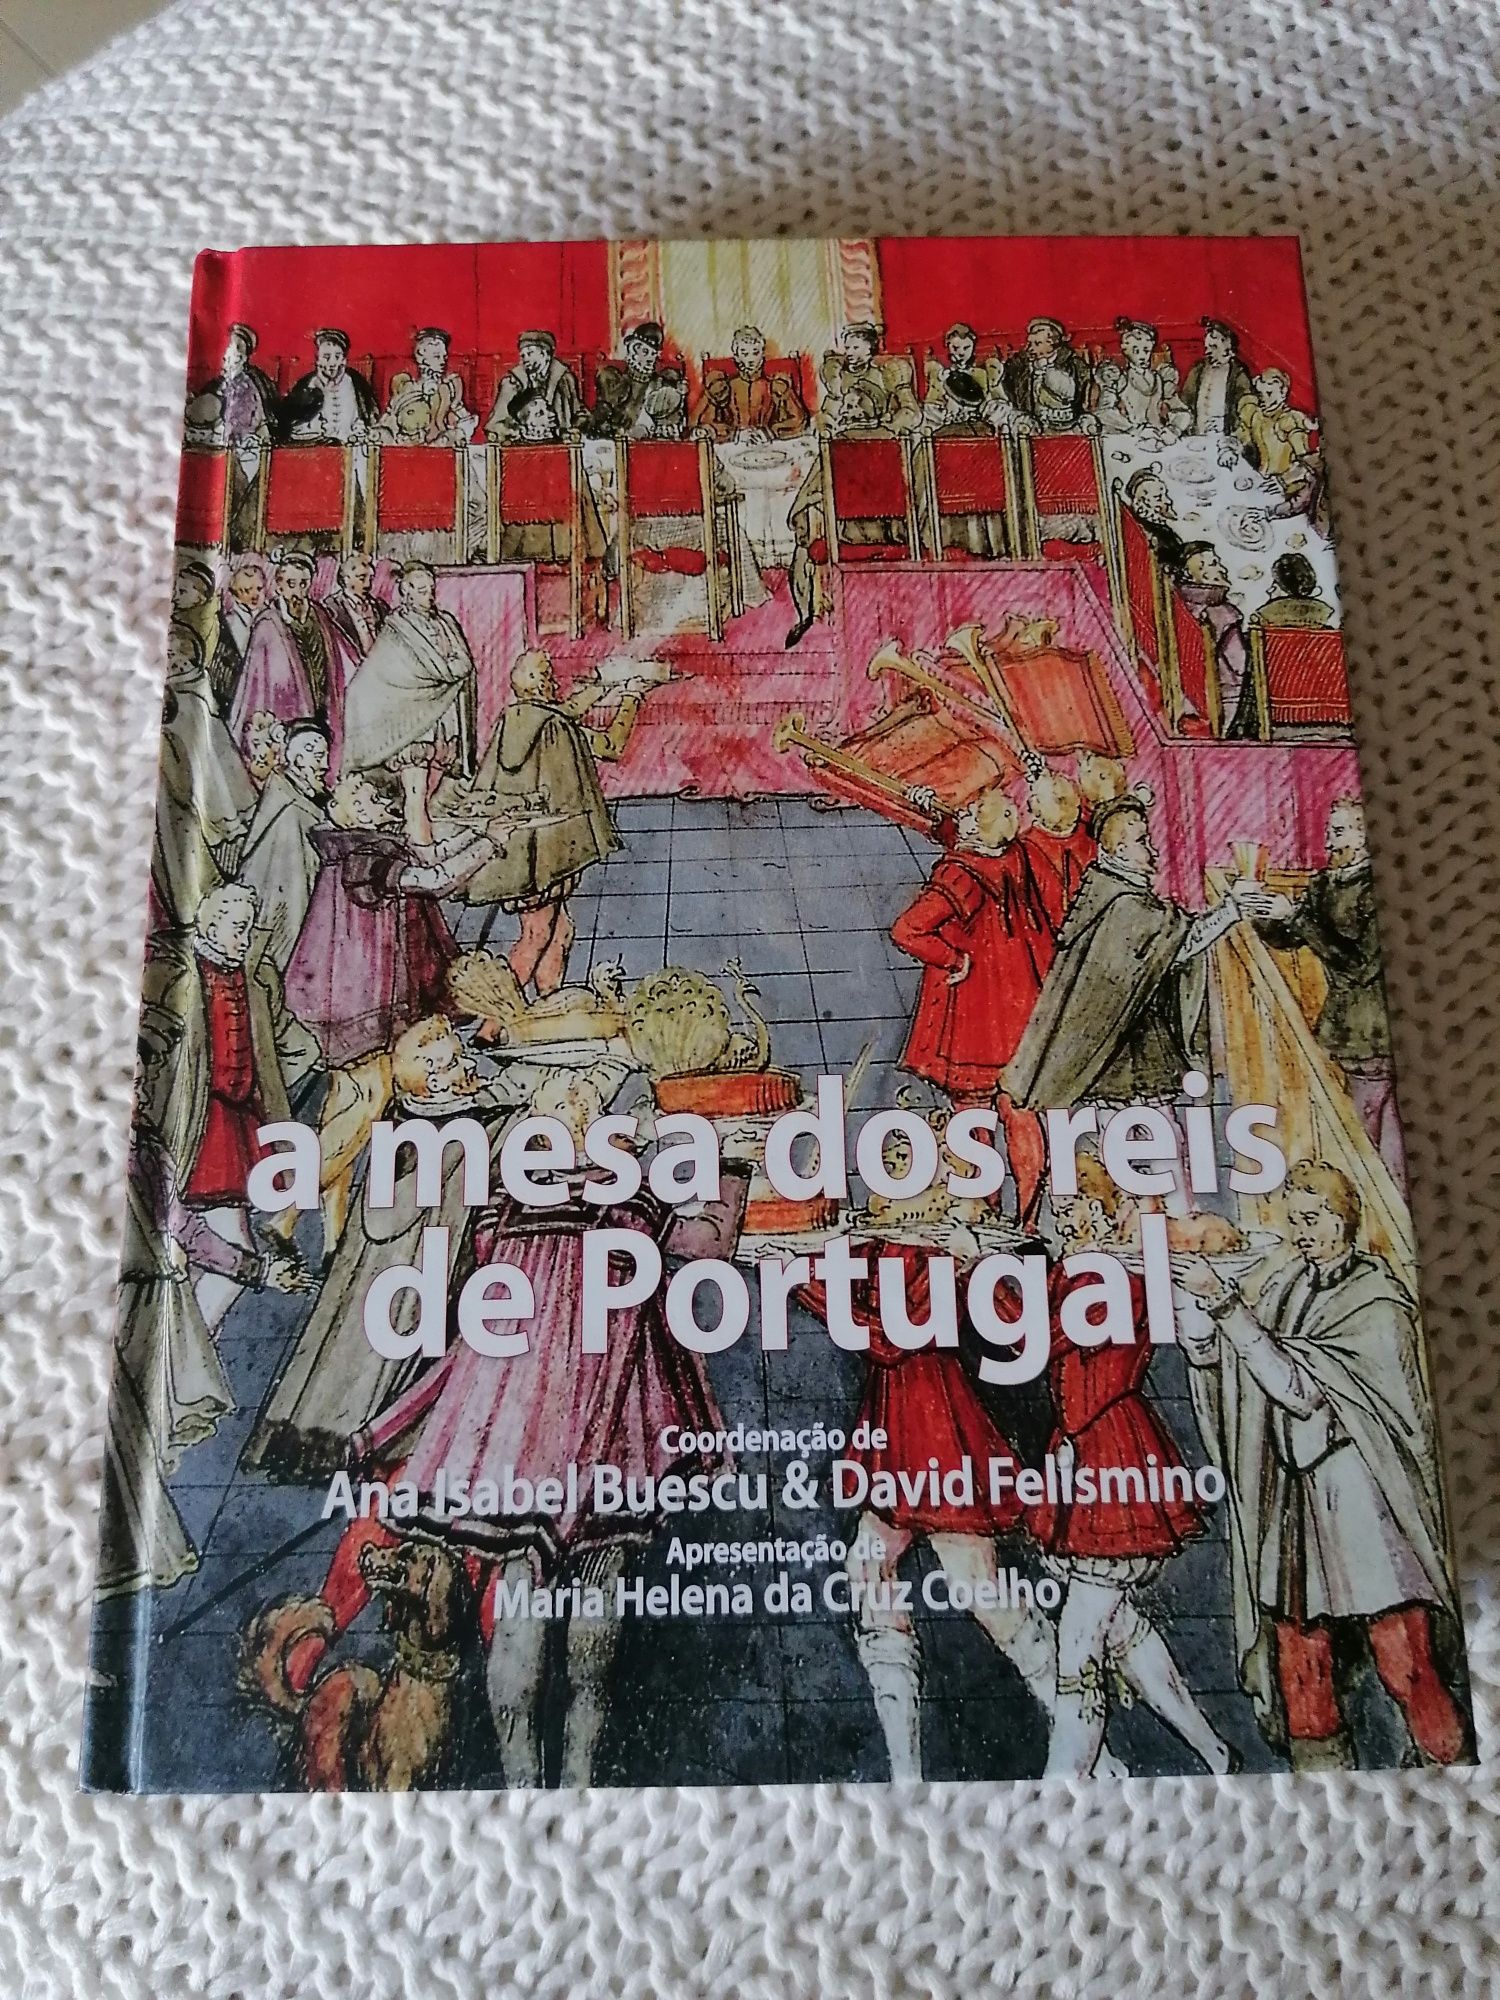 Livro "A mesa dos reis de Portugal"